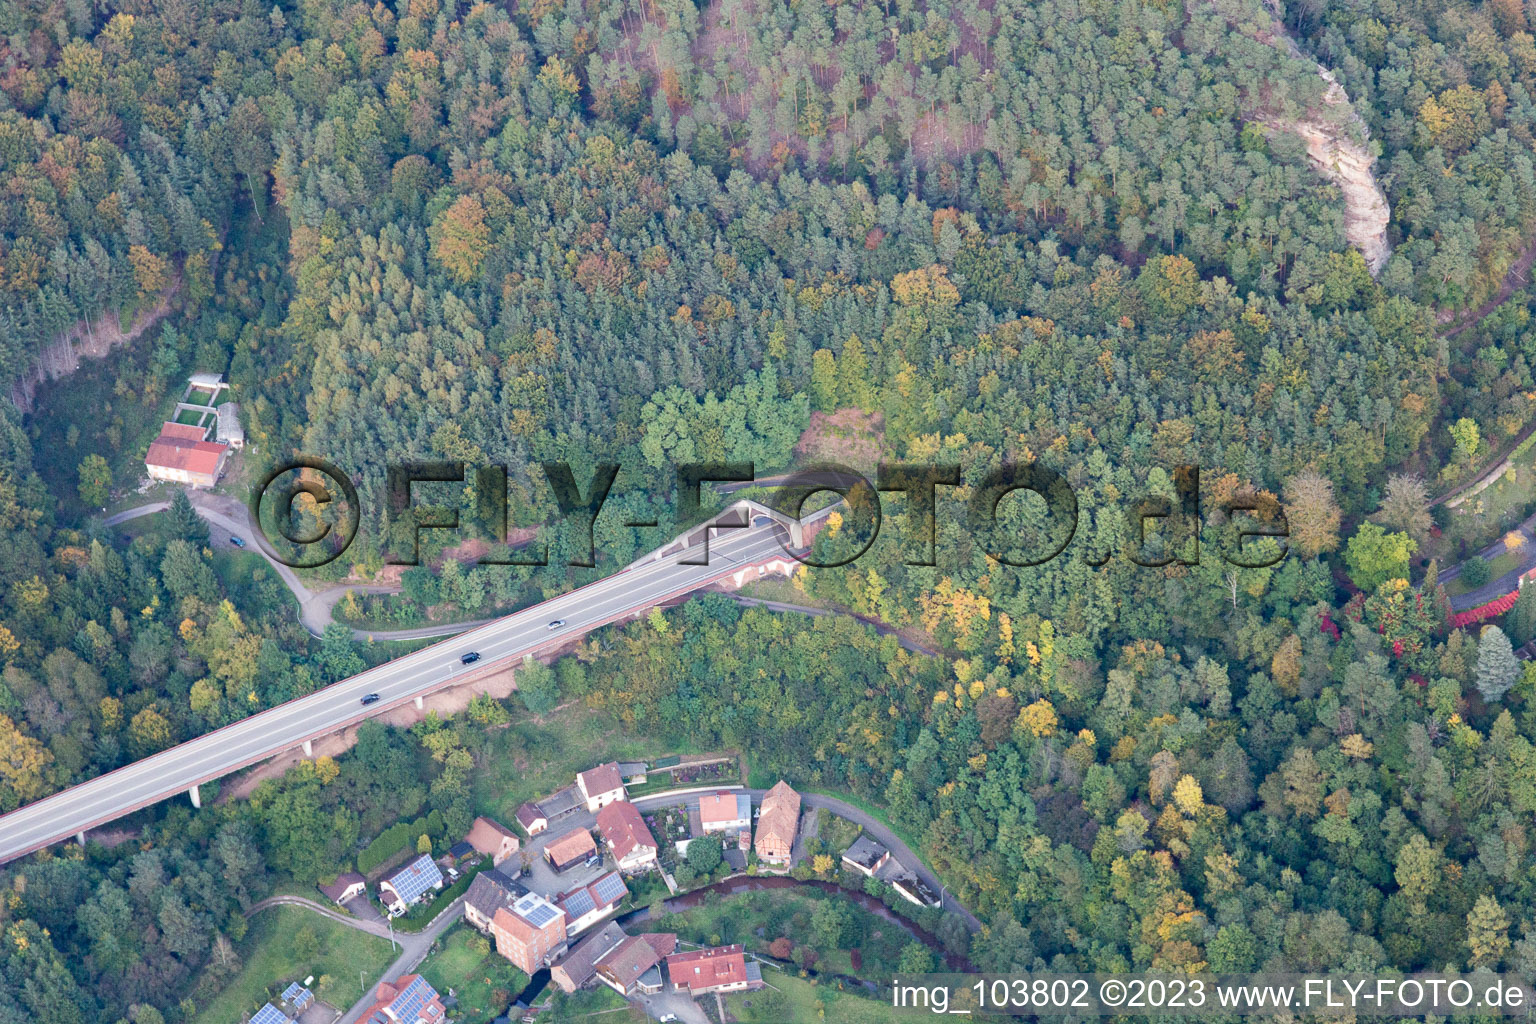 Rinnthal im Bundesland Rheinland-Pfalz, Deutschland aus der Drohnenperspektive